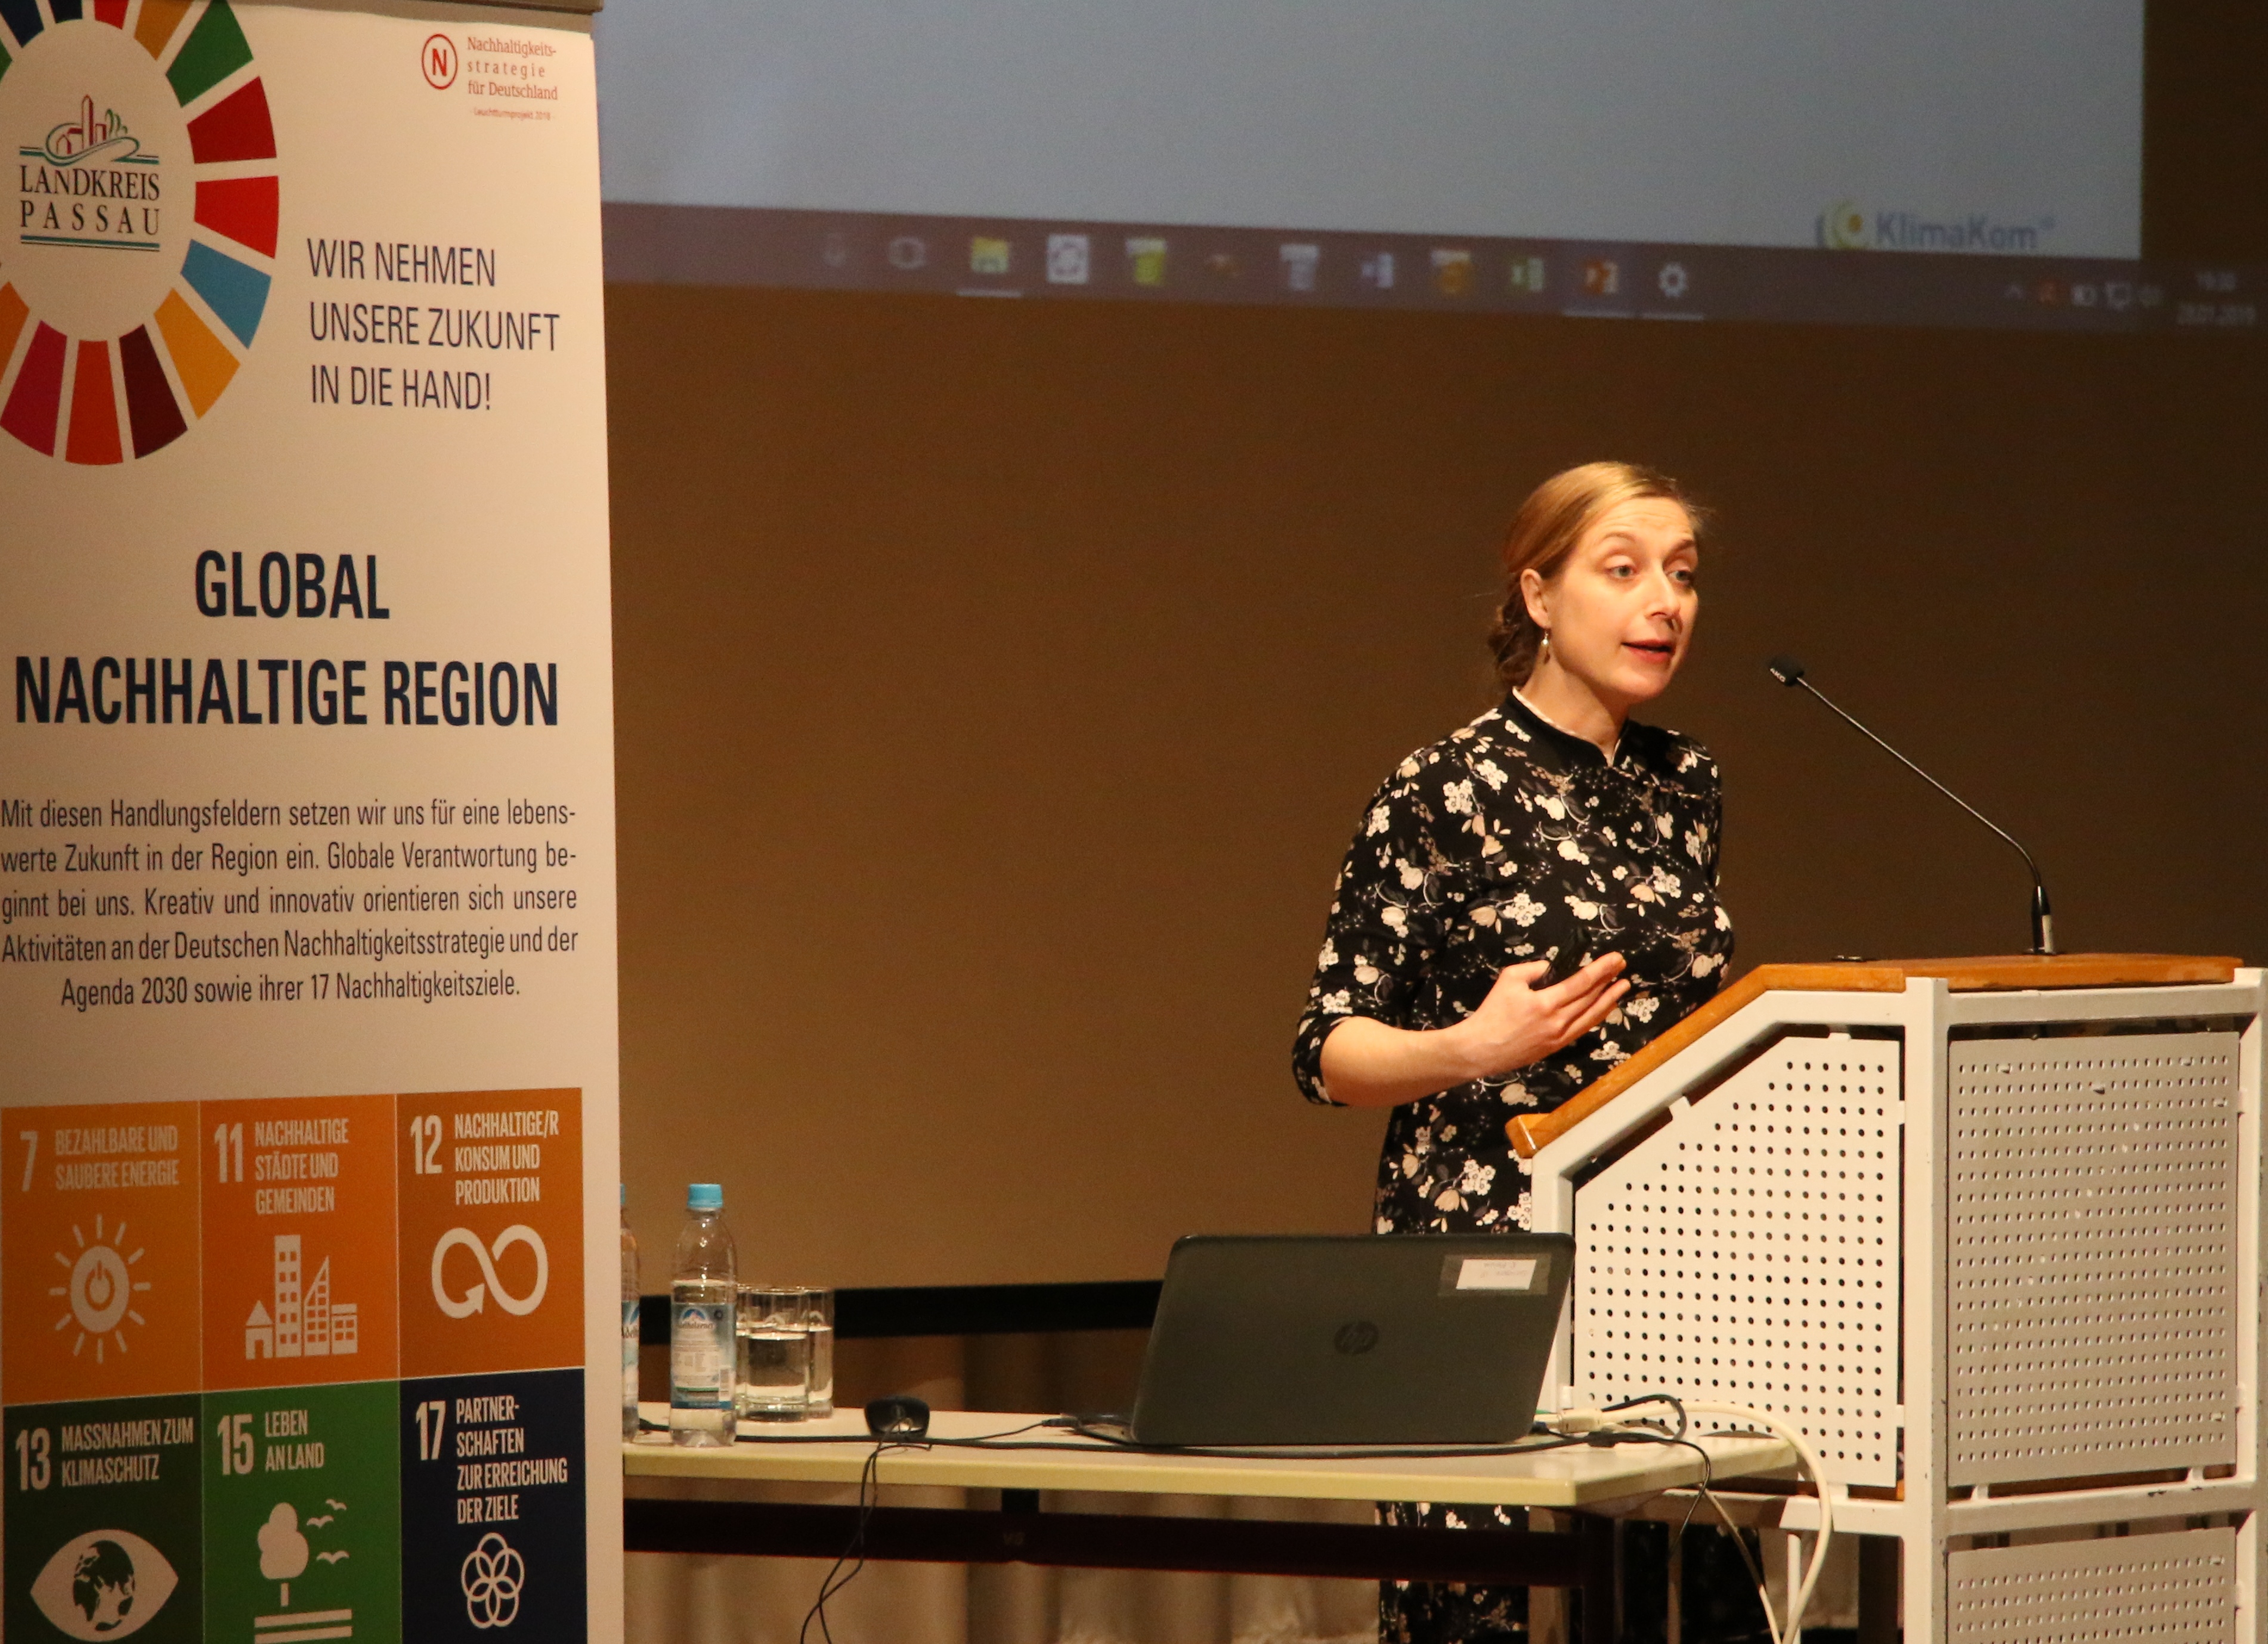 Nina Hehn informierte die Konferenzteilnehmer über den Sachstand im Passauer Land beim Thema Nachhaltigkeit.